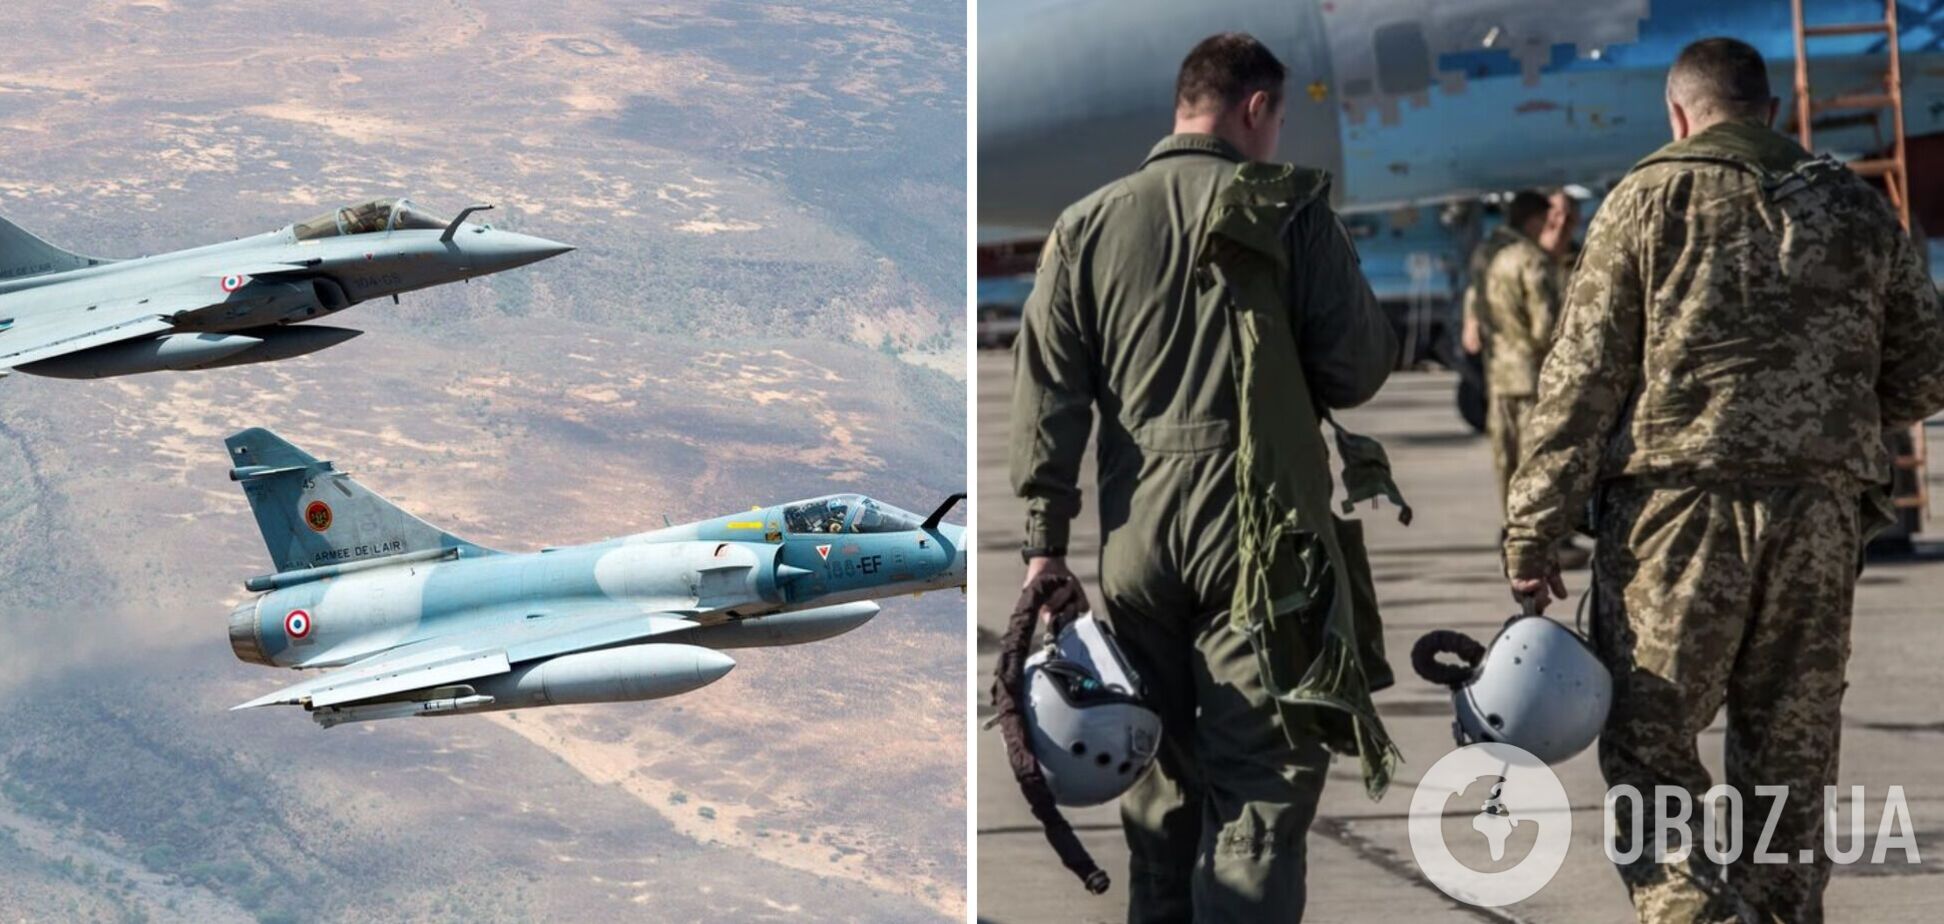 Во Франции сообщили об обучении украинских пилотов на истребителях Mirage 2000: в Воздушных силах опровергли